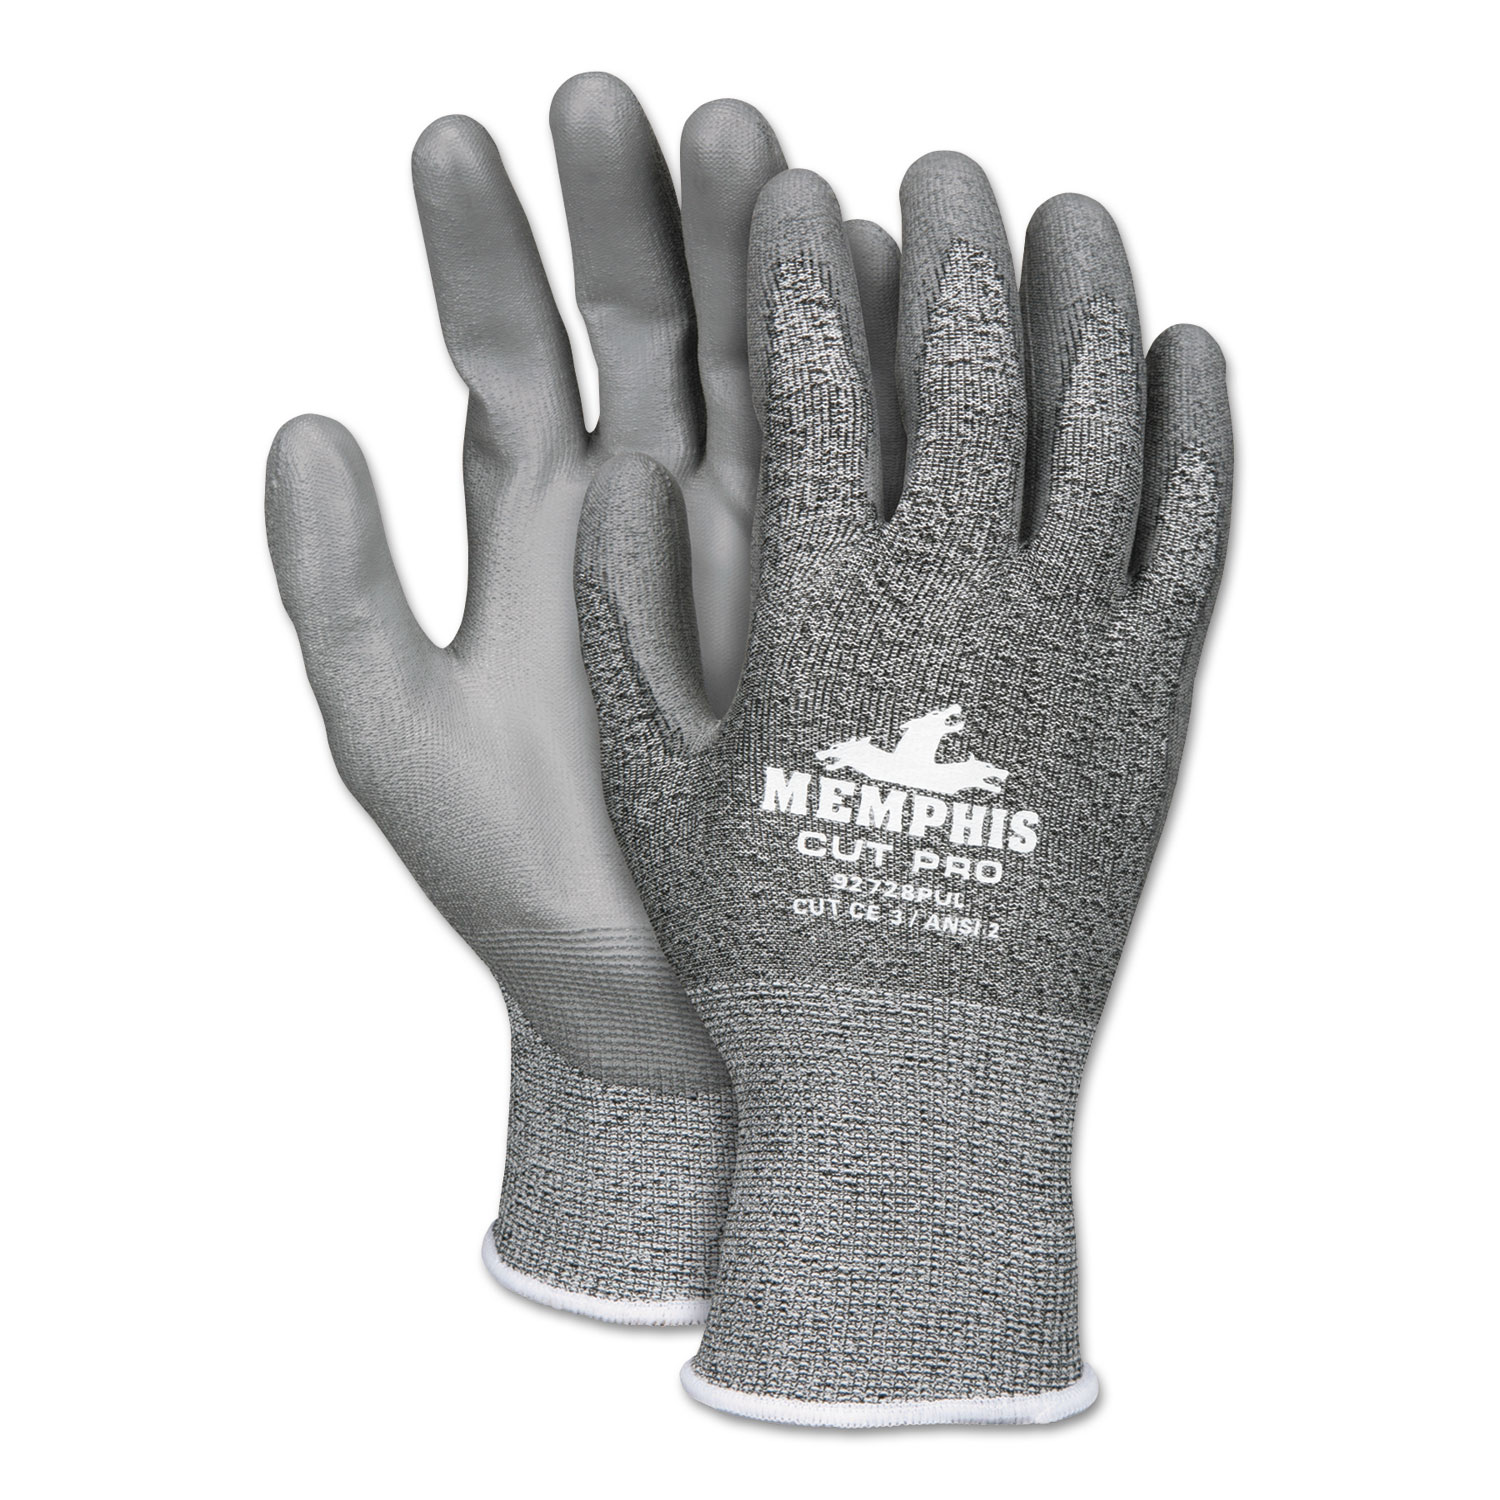  MCR Safety 92728PUM Memphis Cut Pro 92728PU Glove, Black/White/Gray, Medium, Dozen (CRW92728PUM) 